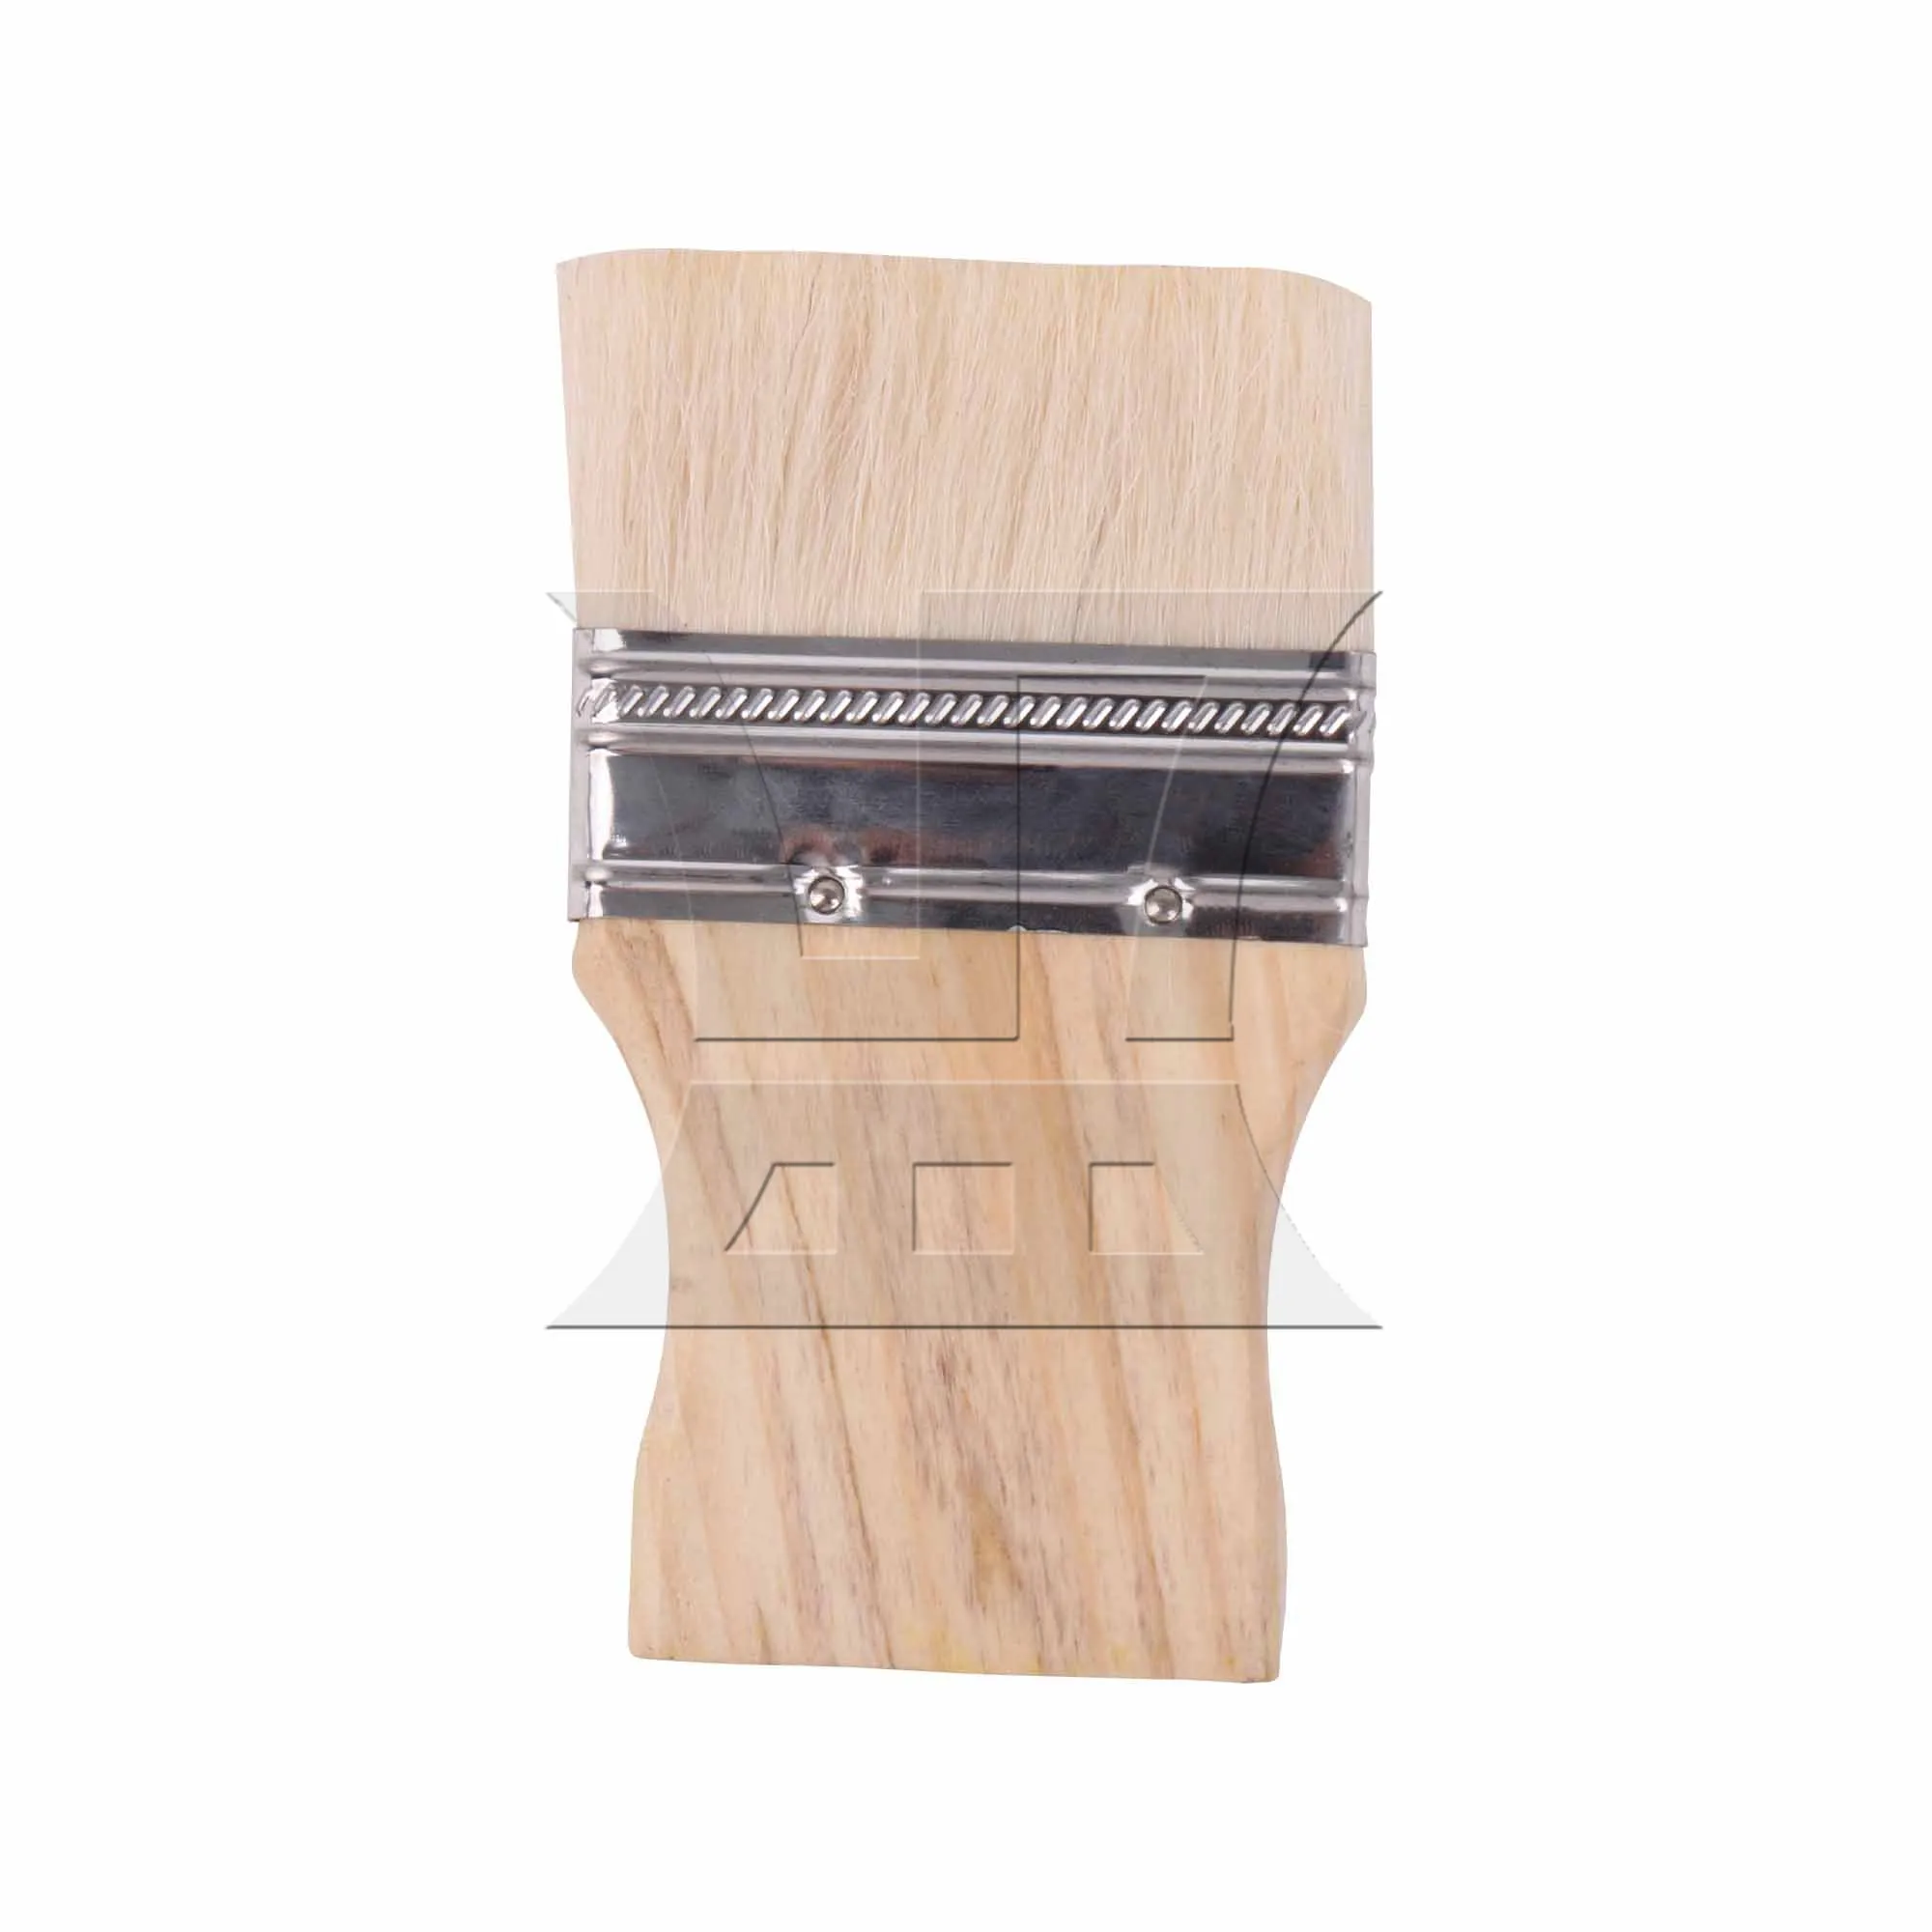 

BQLZR плоская кисть 3 дюйма с квадратной деревянной ручкой для покраски мебели